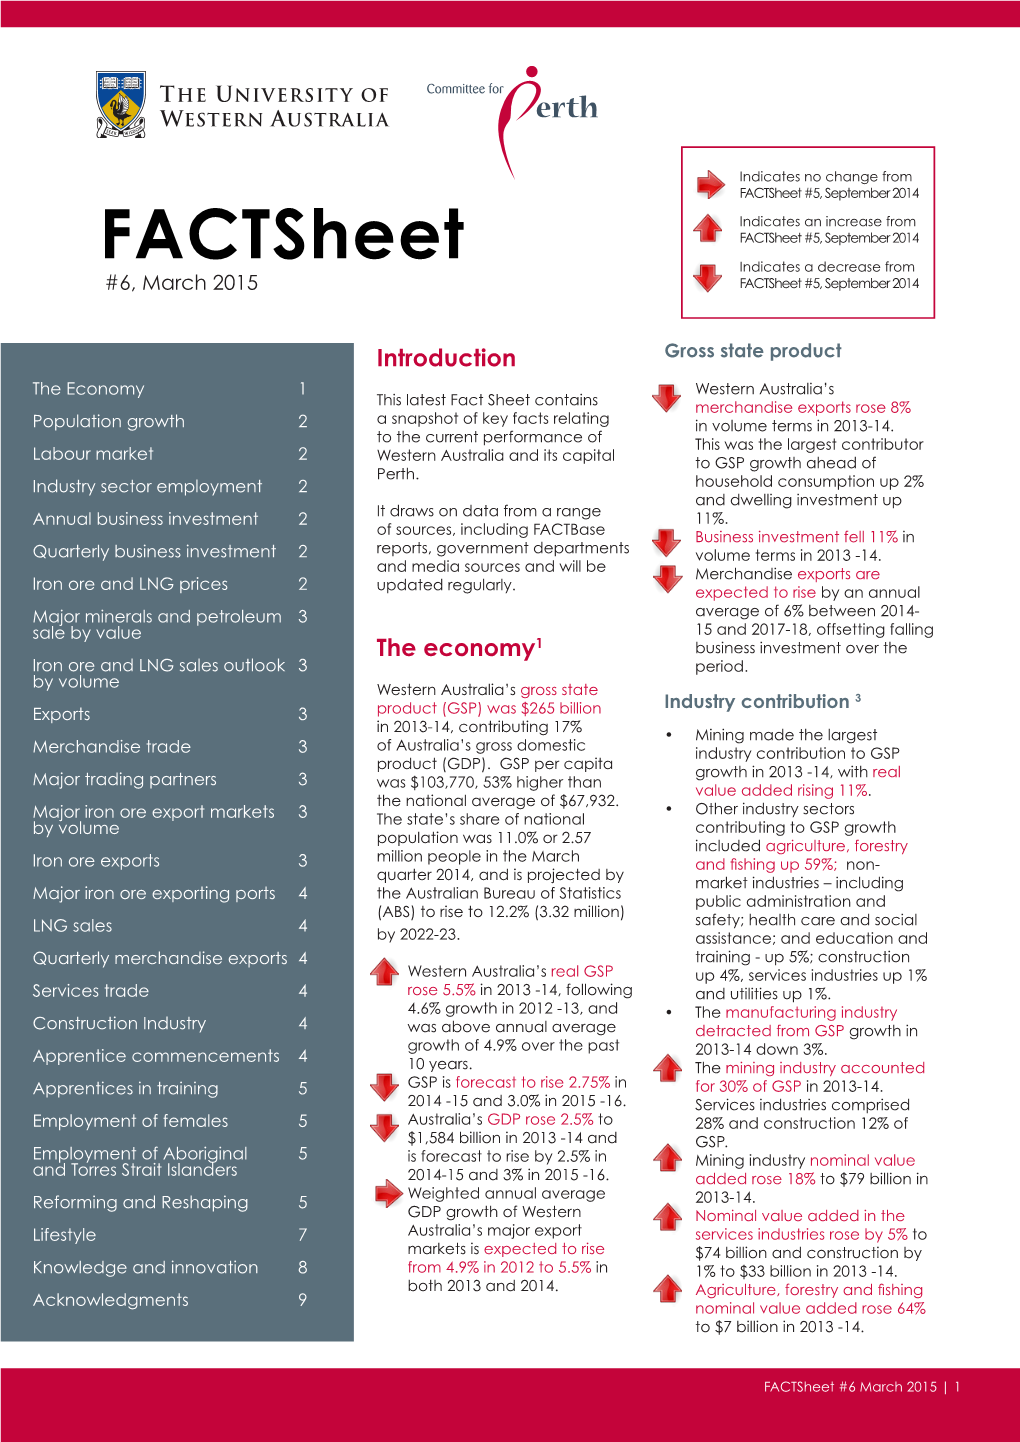 Factsheet #5, September 2014